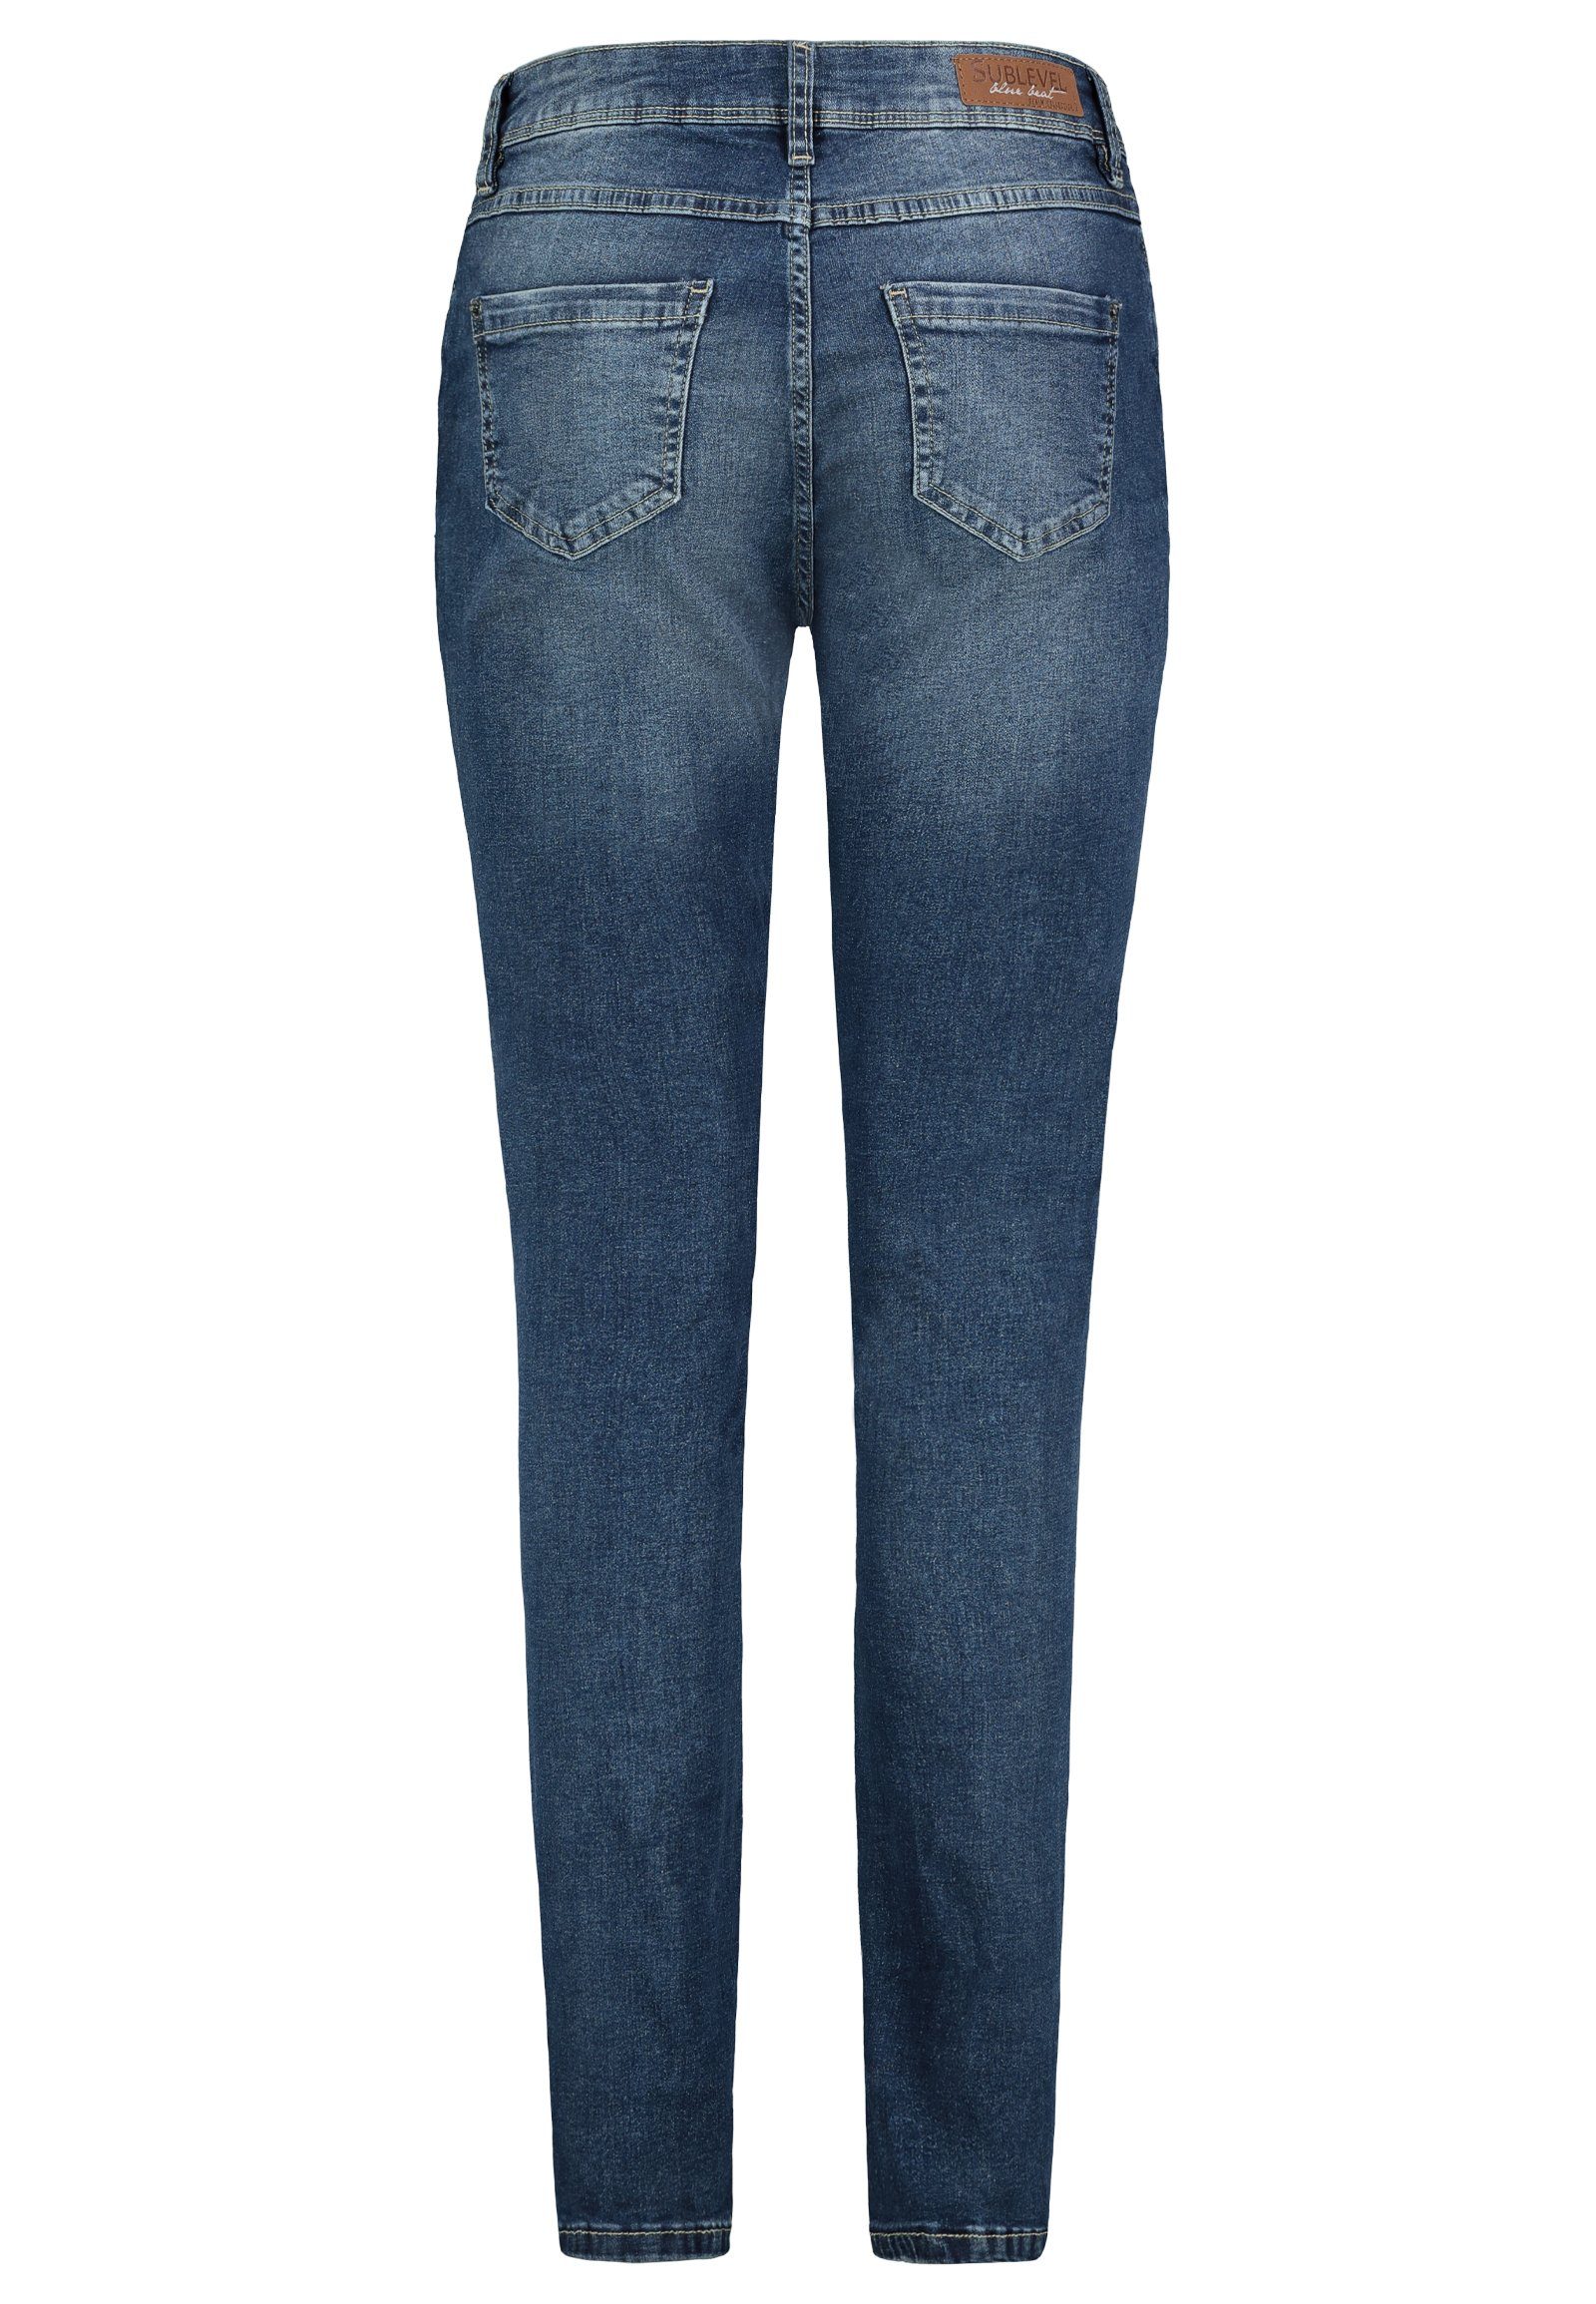 Jeanshose Middle Hose Slim Jeans Denim SUBLEVEL Fit Blue Stretch Hose Damen Röhre Slim-fit-Jeans Sublevel